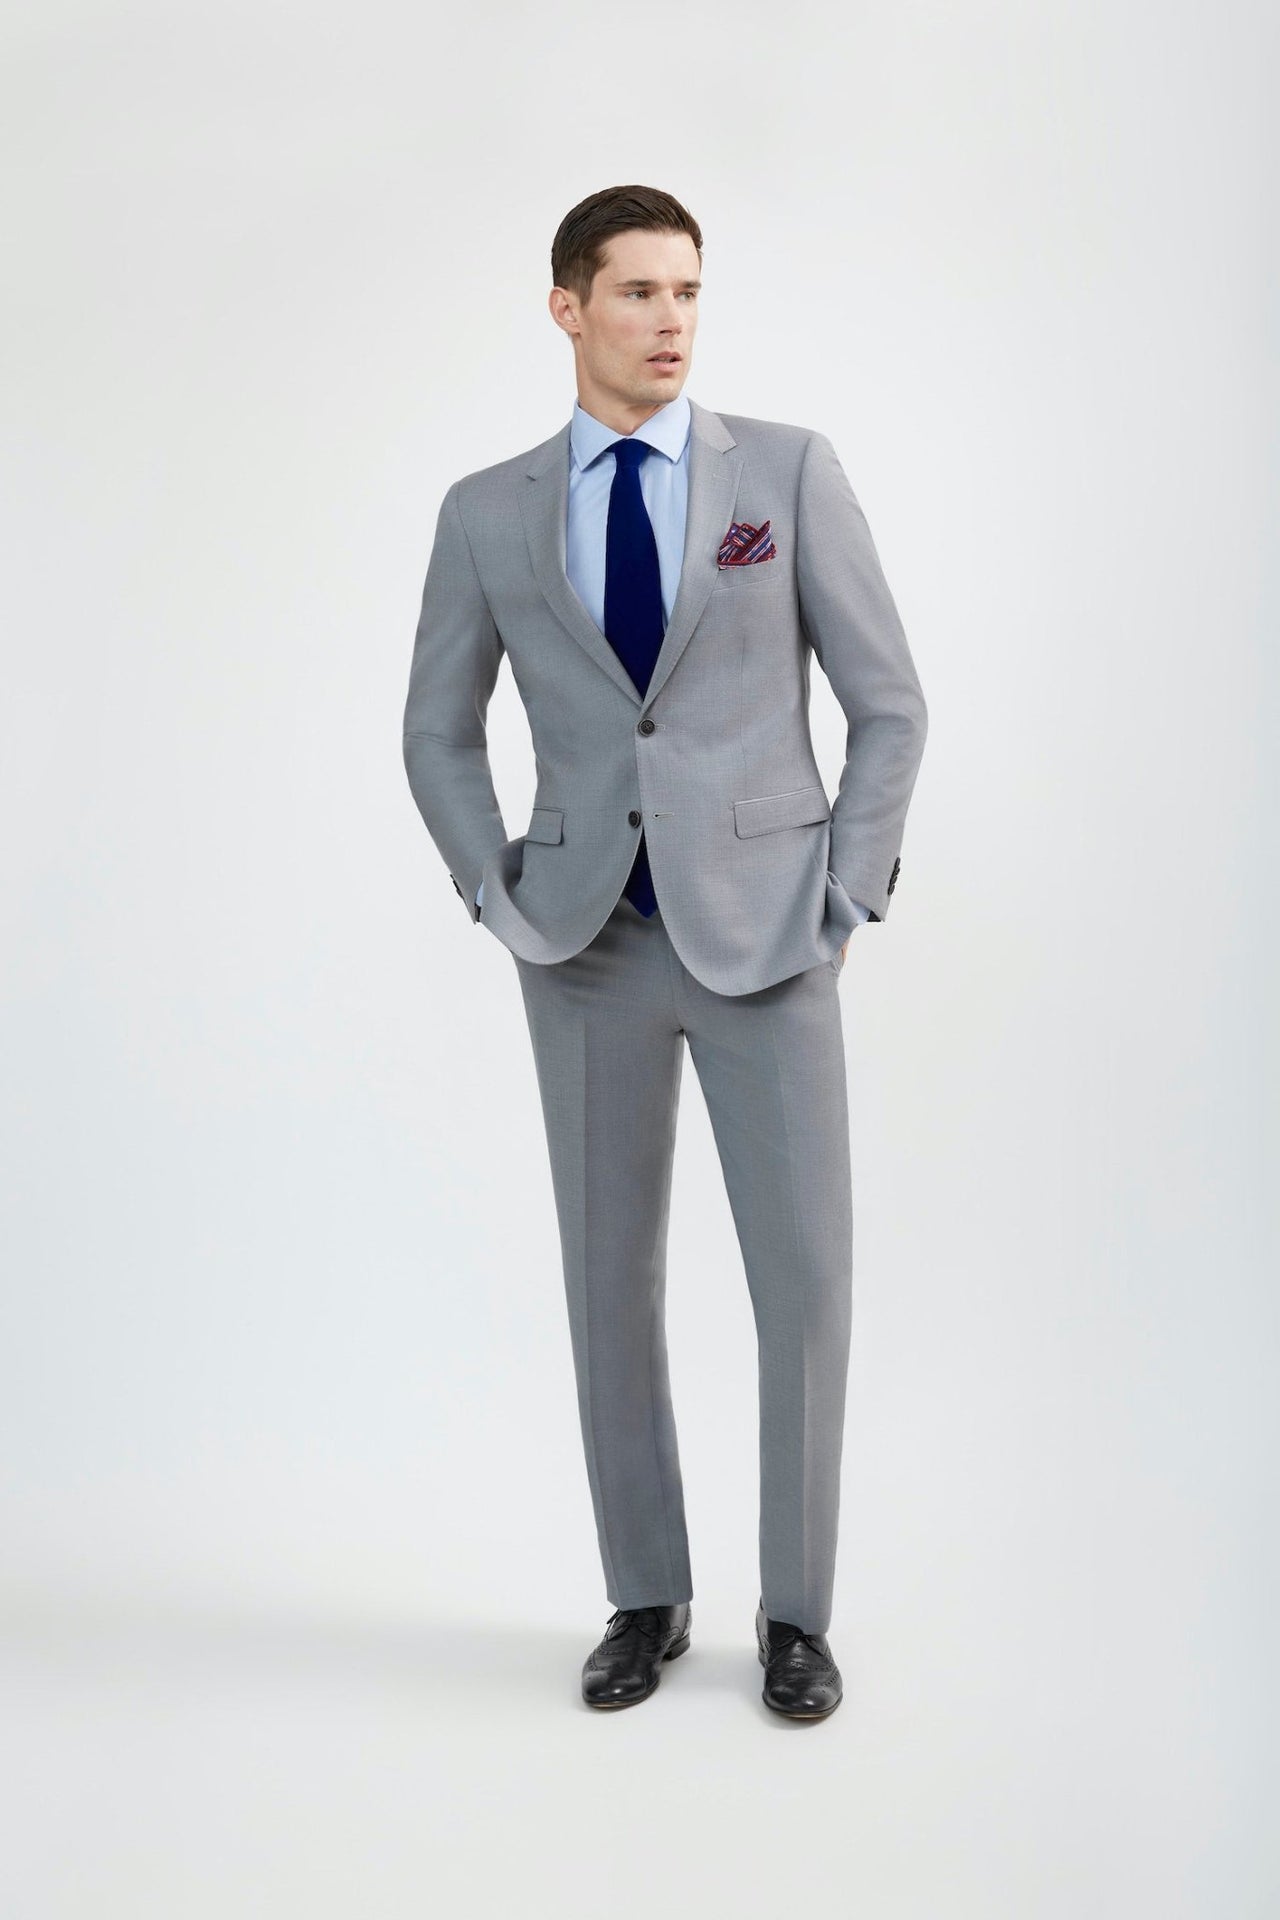 Royal Blue Suit  Buy A Royal Blue Suit For Men at Tomasso Black